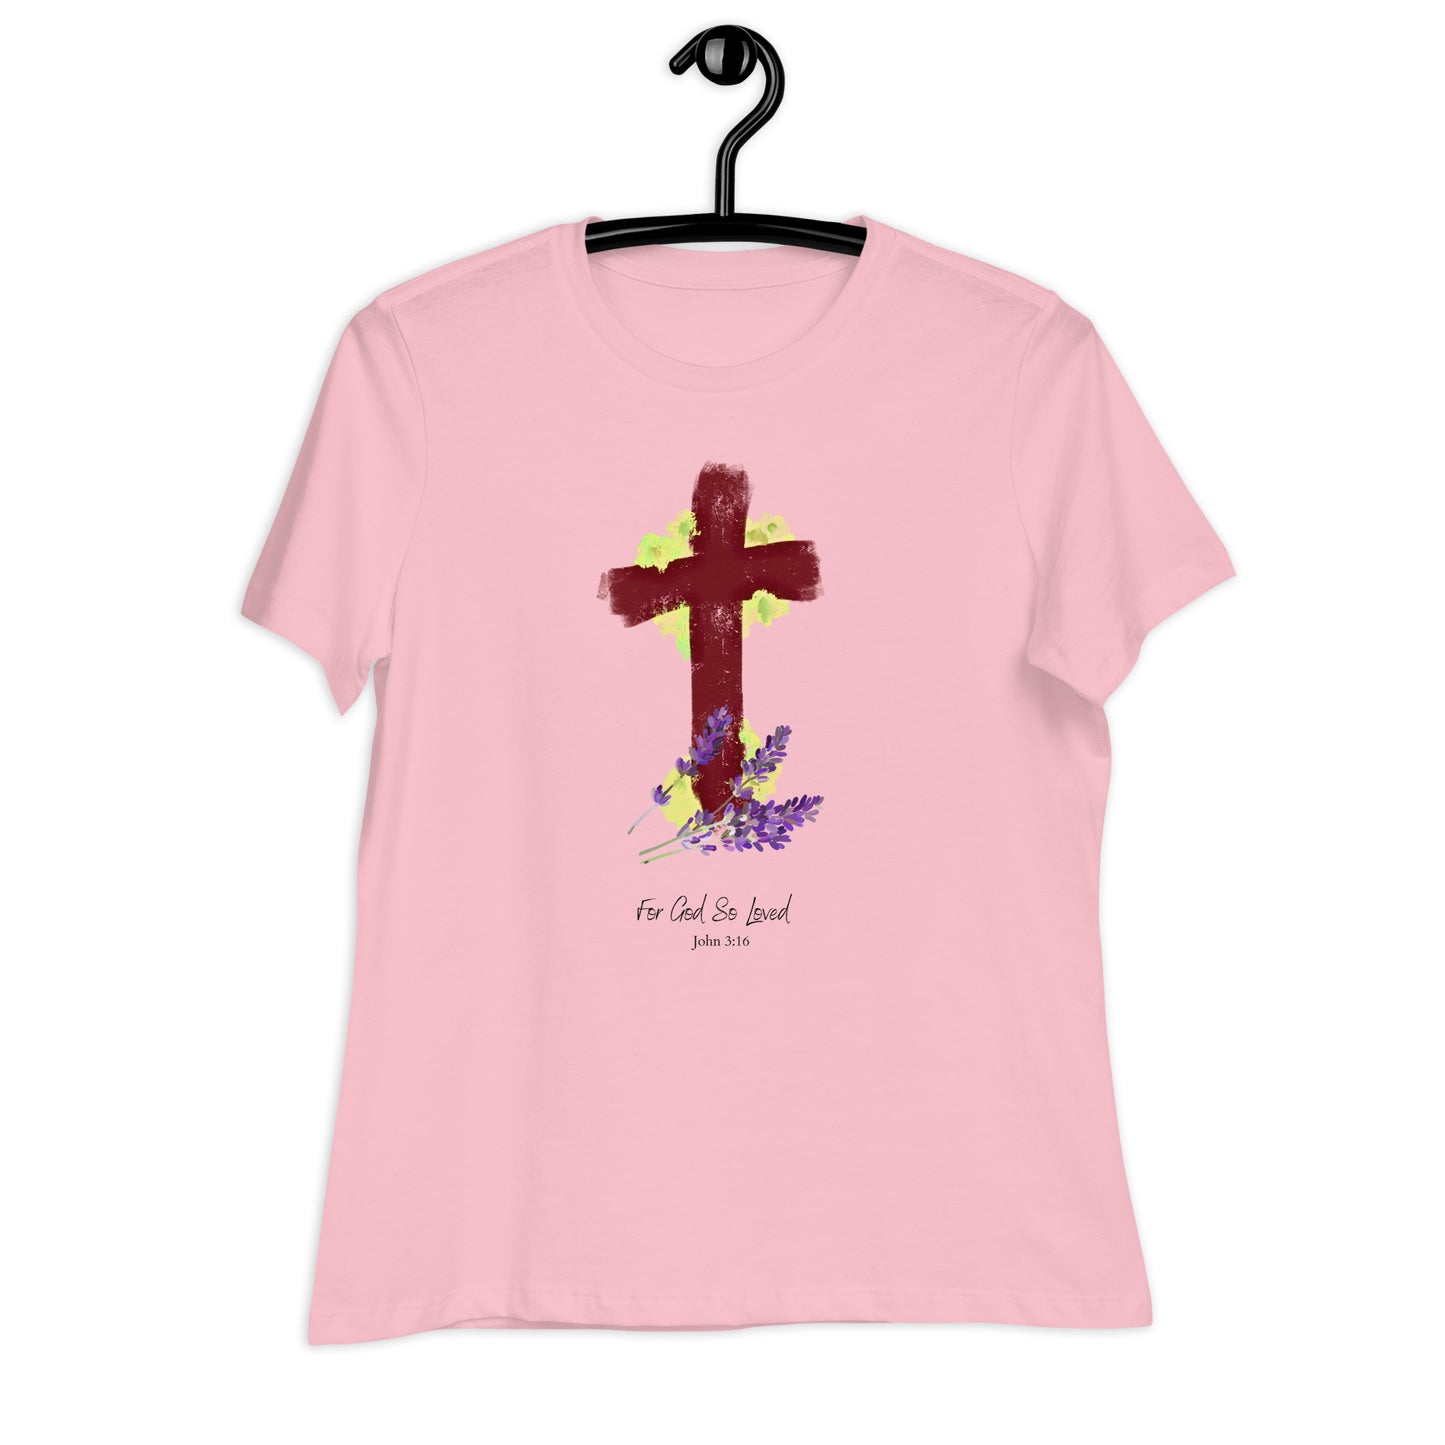 For God So Loved Women's T-Shirt